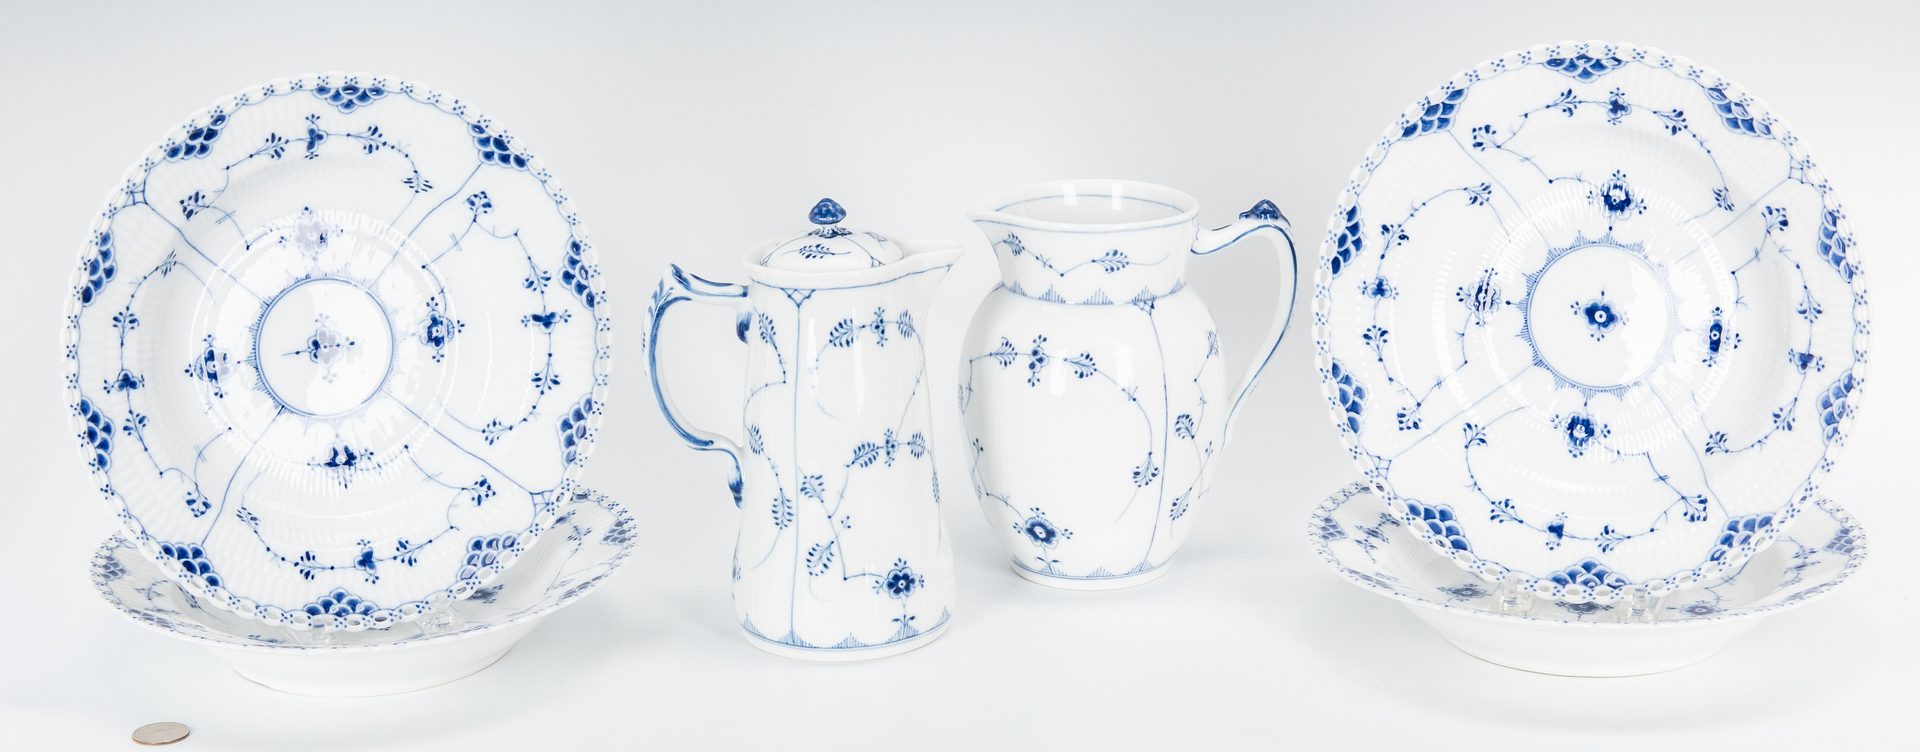 Lot 488: 21 Royal Copenhagen Porcelain Items